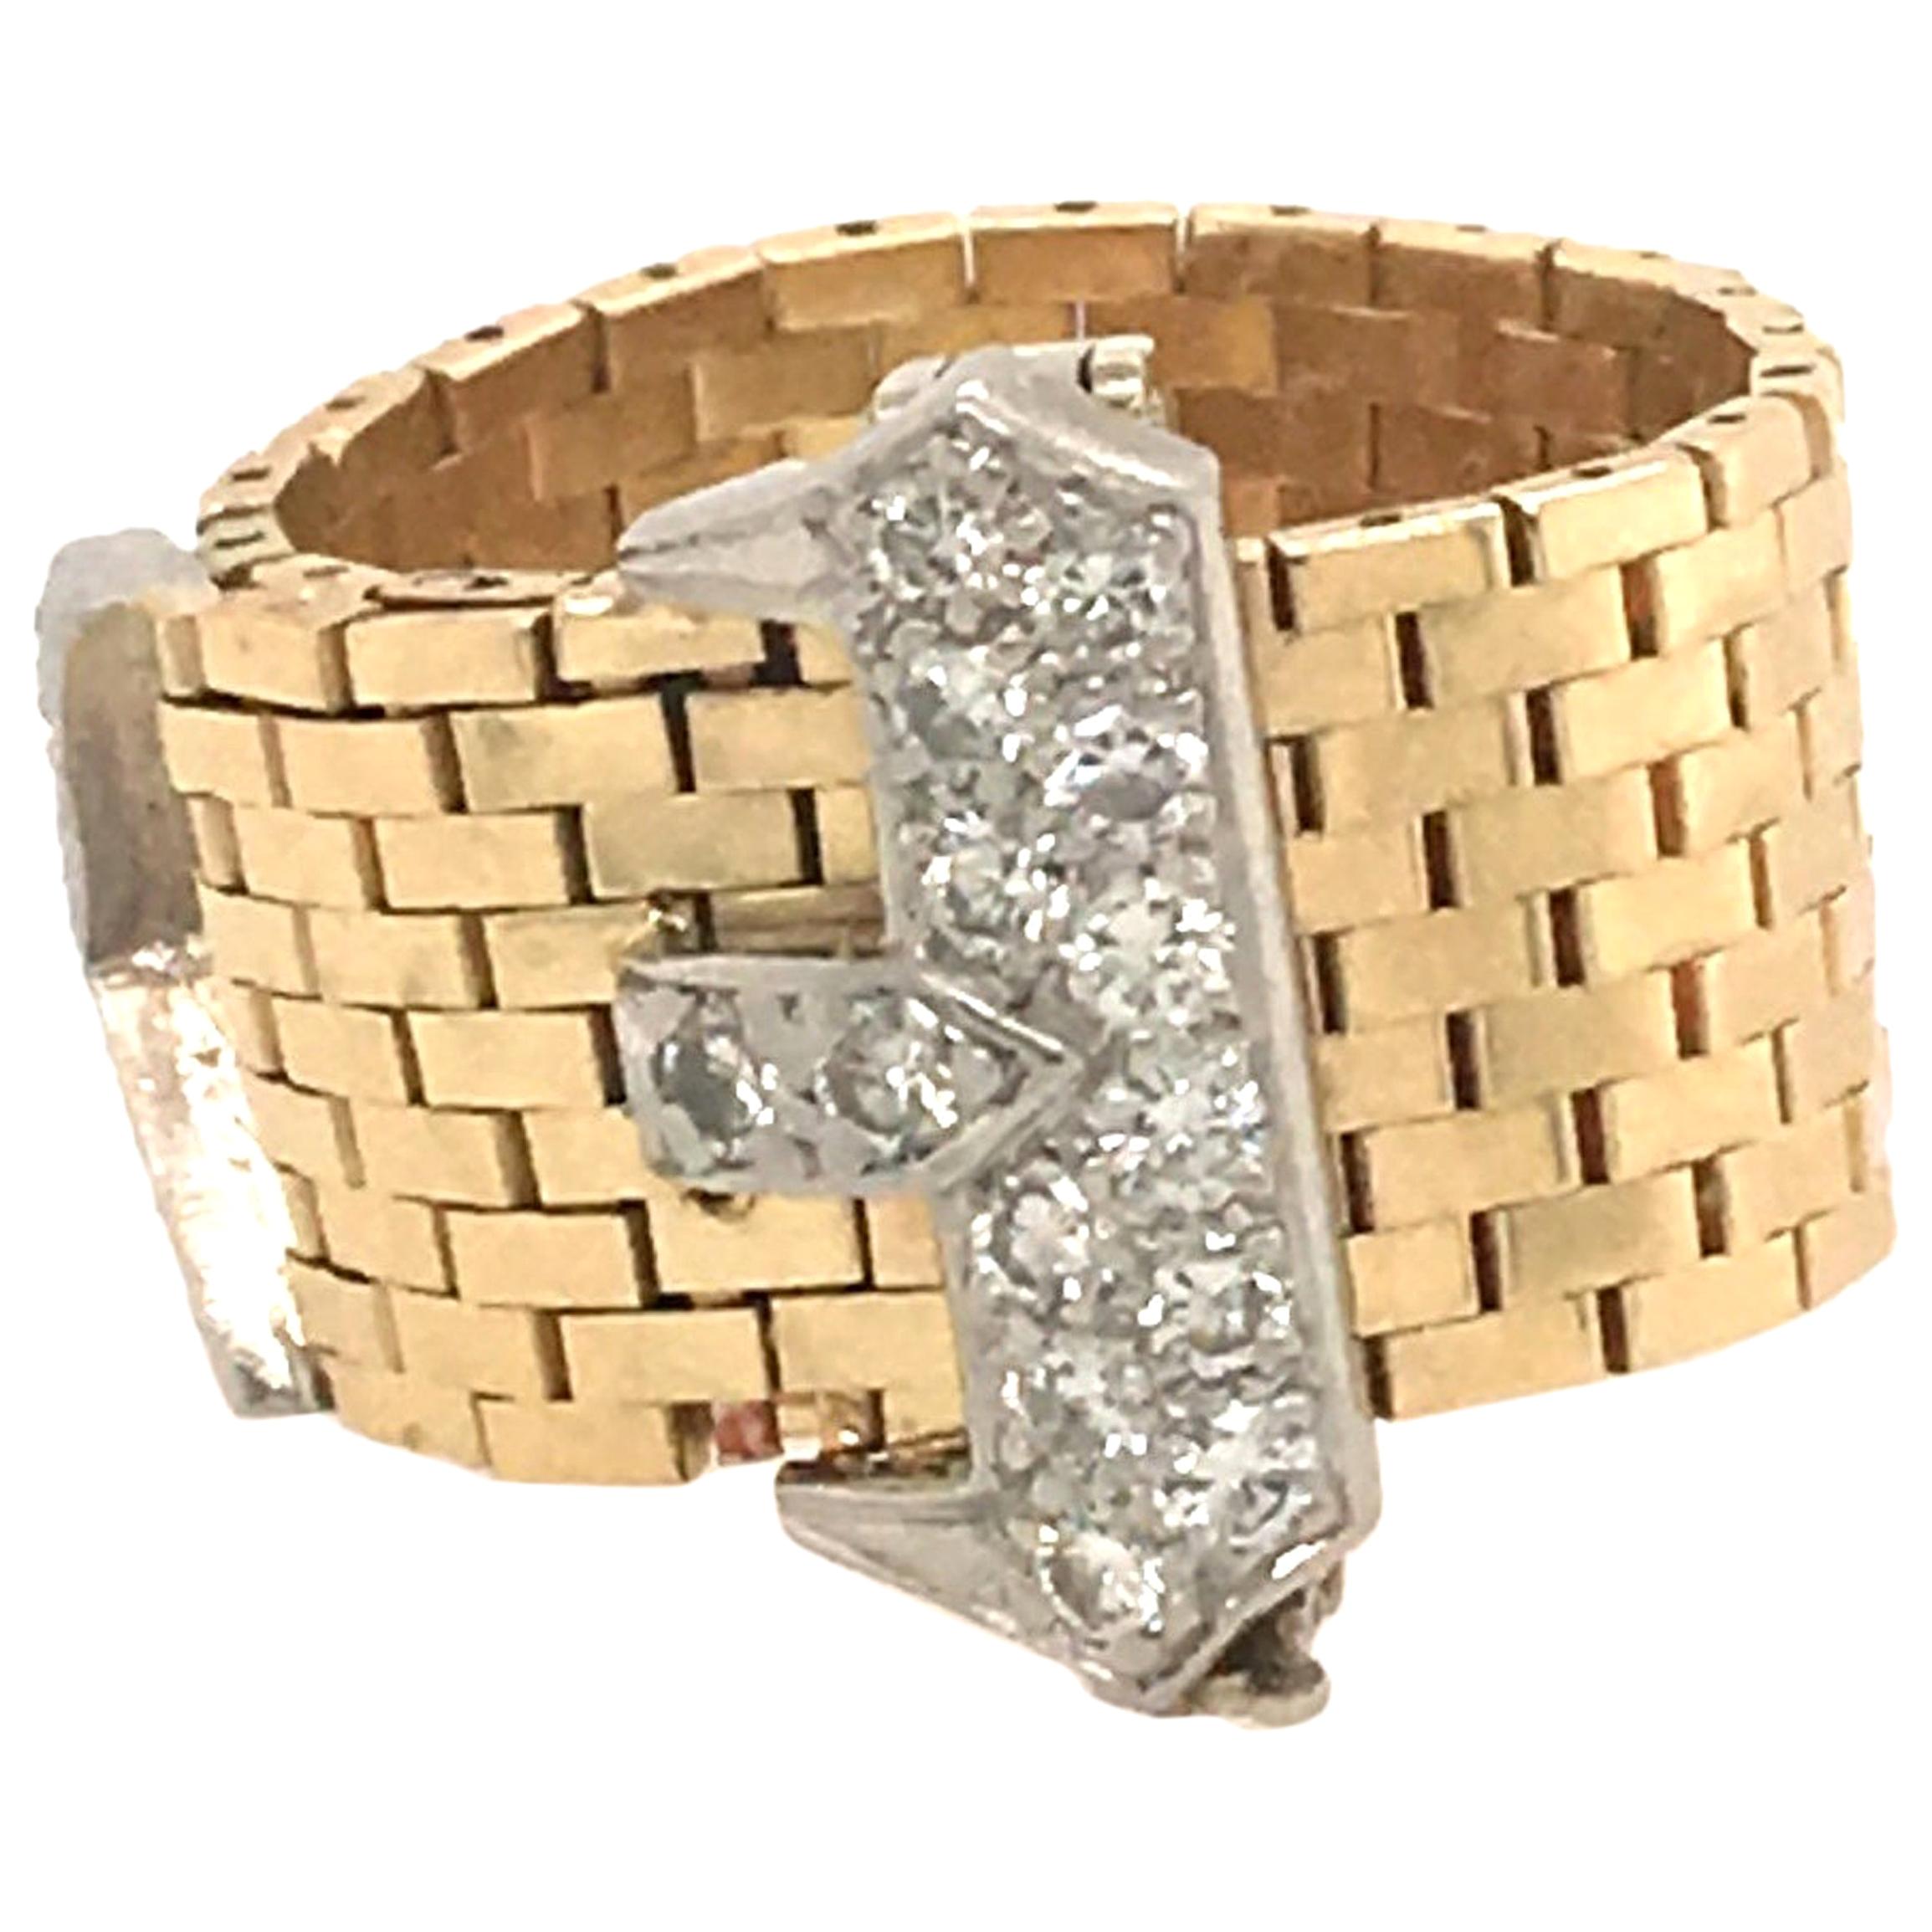 Corbett & Bertolone Gold and Diamond Ring